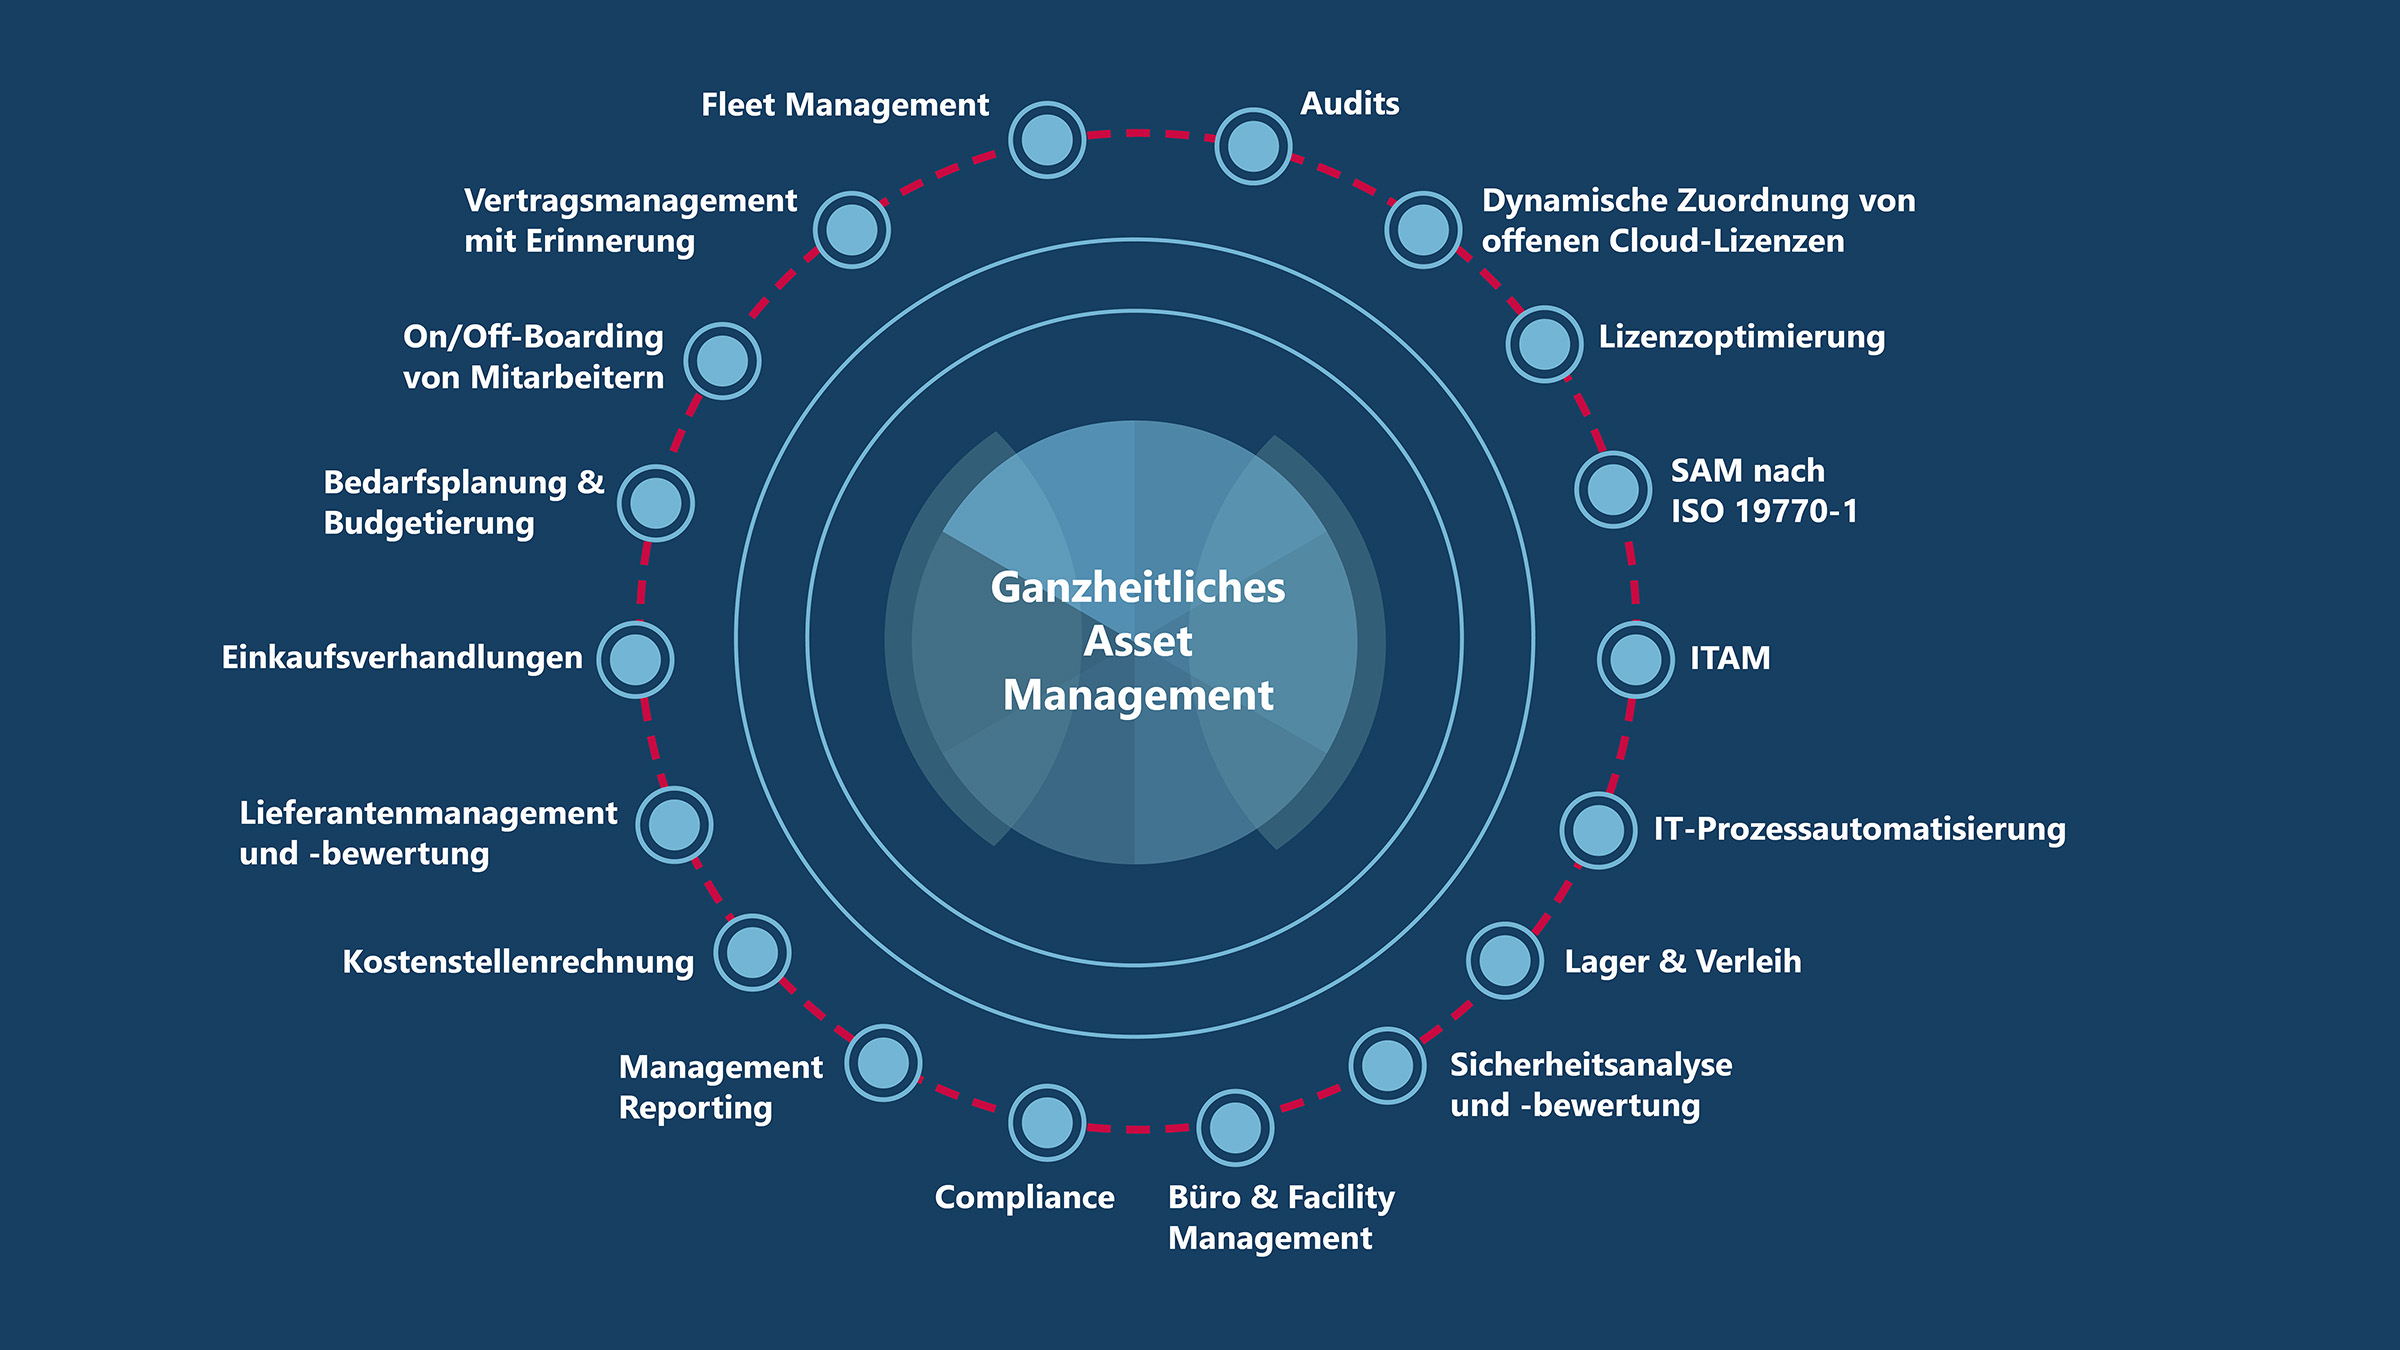 Viele verschiedene Use Cases profitieren von Unified Asset Management